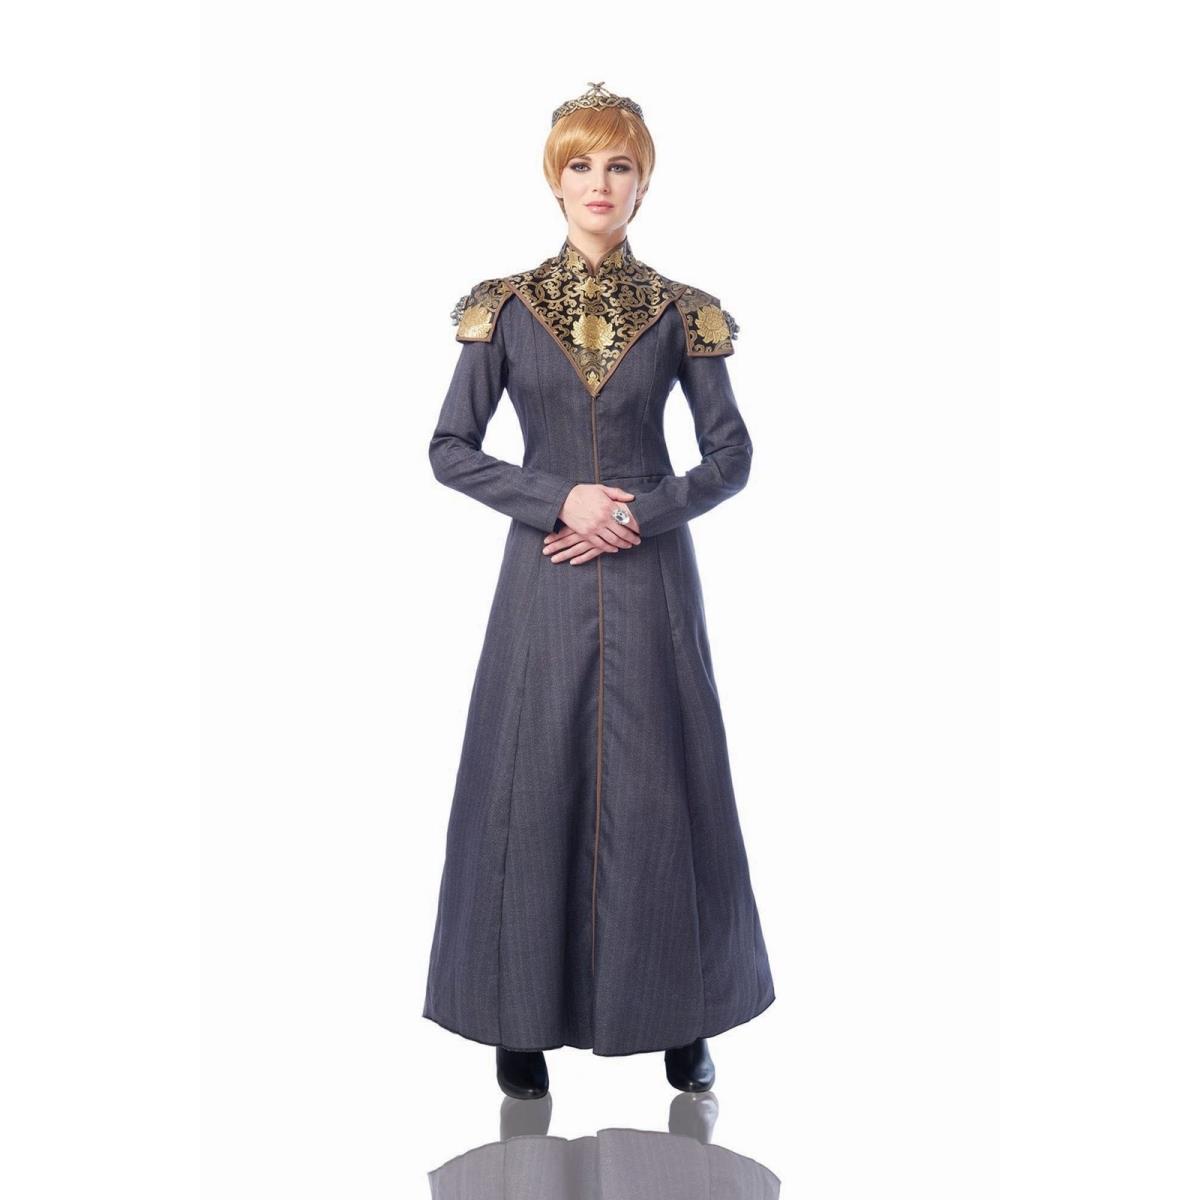 Picture of Costume Culture 403684 Womens Queen of Kingdoms Costume - Medium